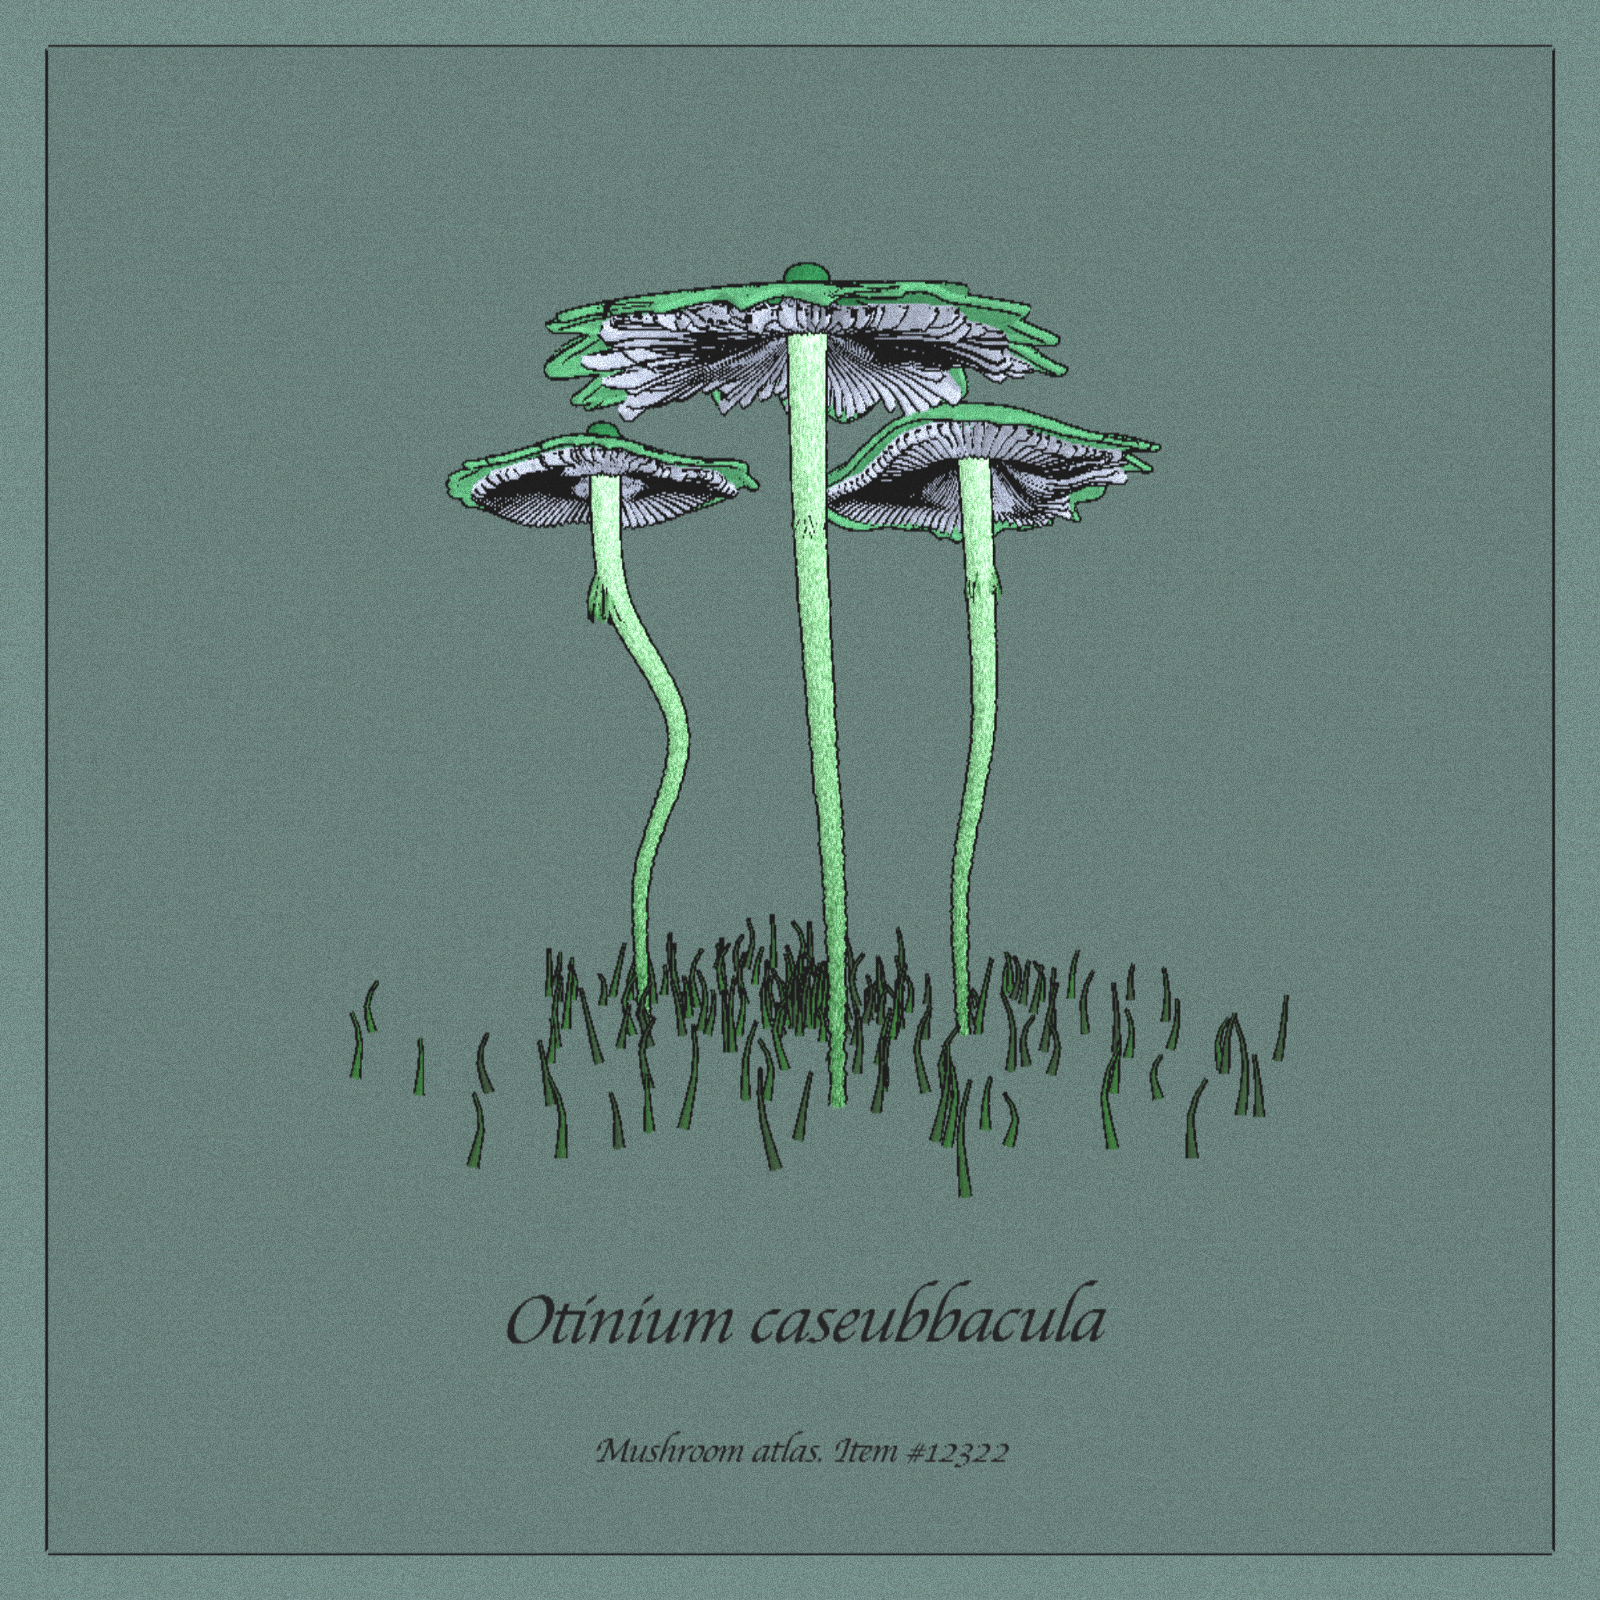 Otinium caseubbacula — one of the generative mushroom specimens